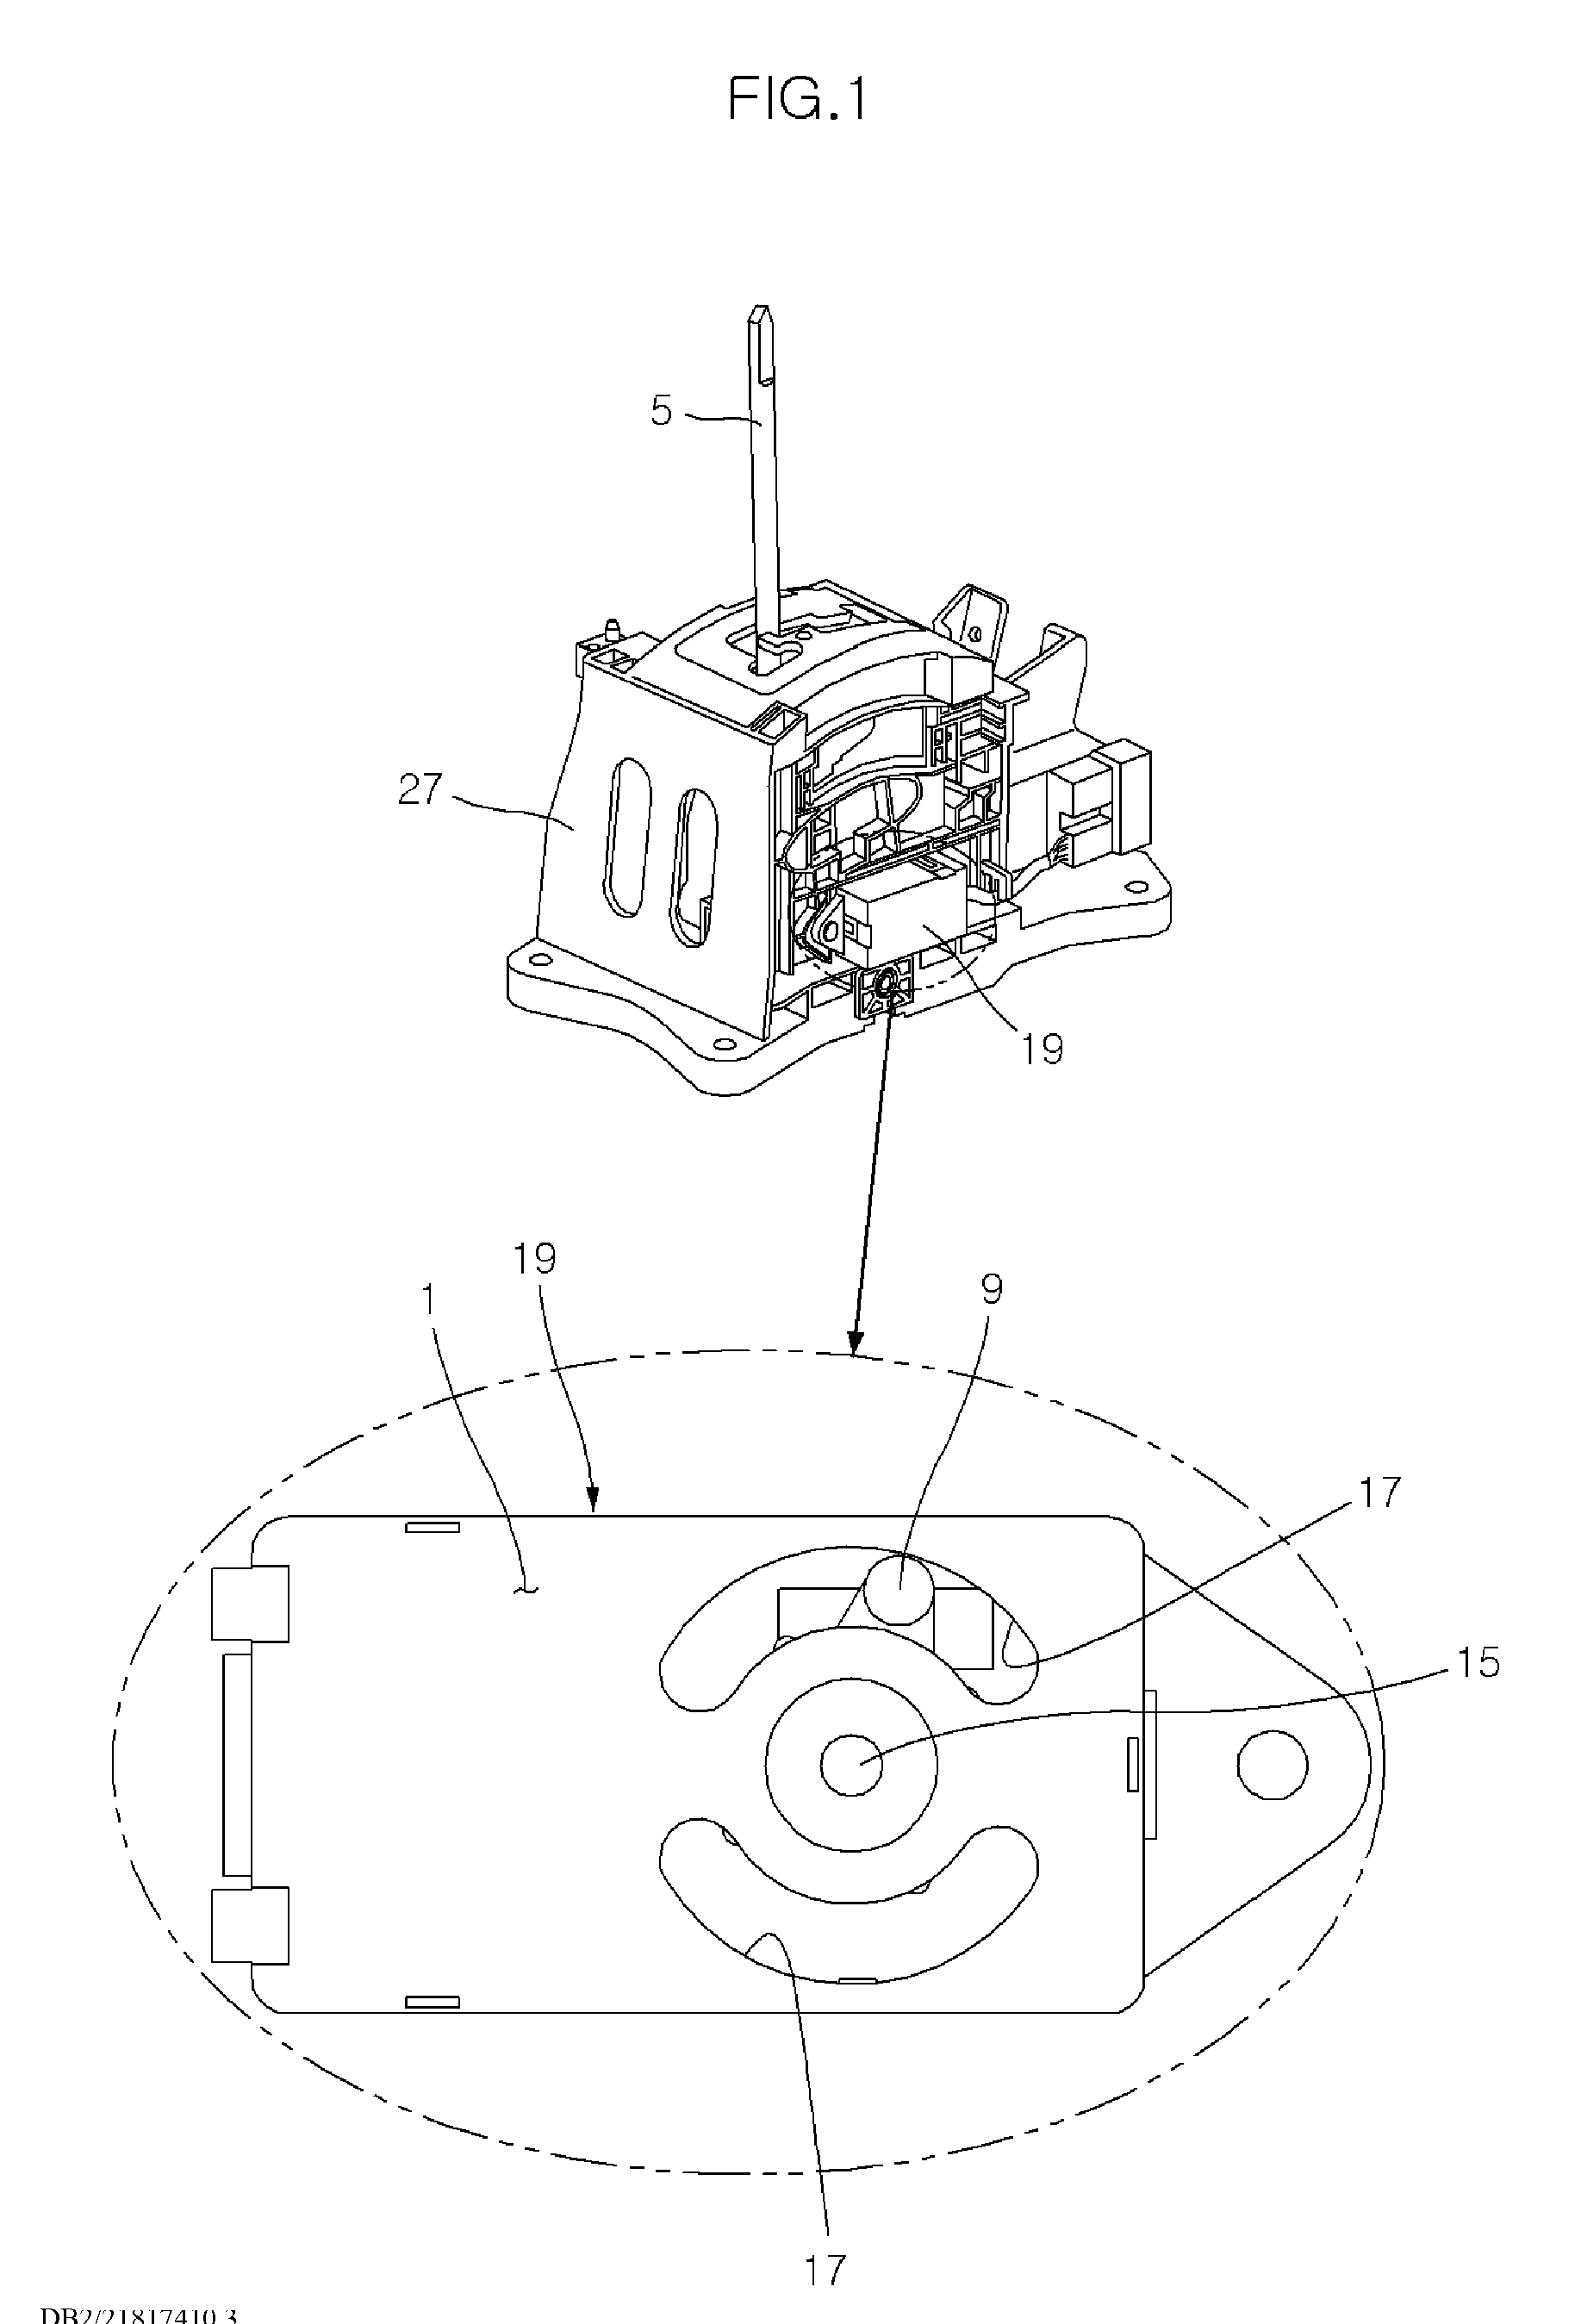 Shifting range sensing apparatus